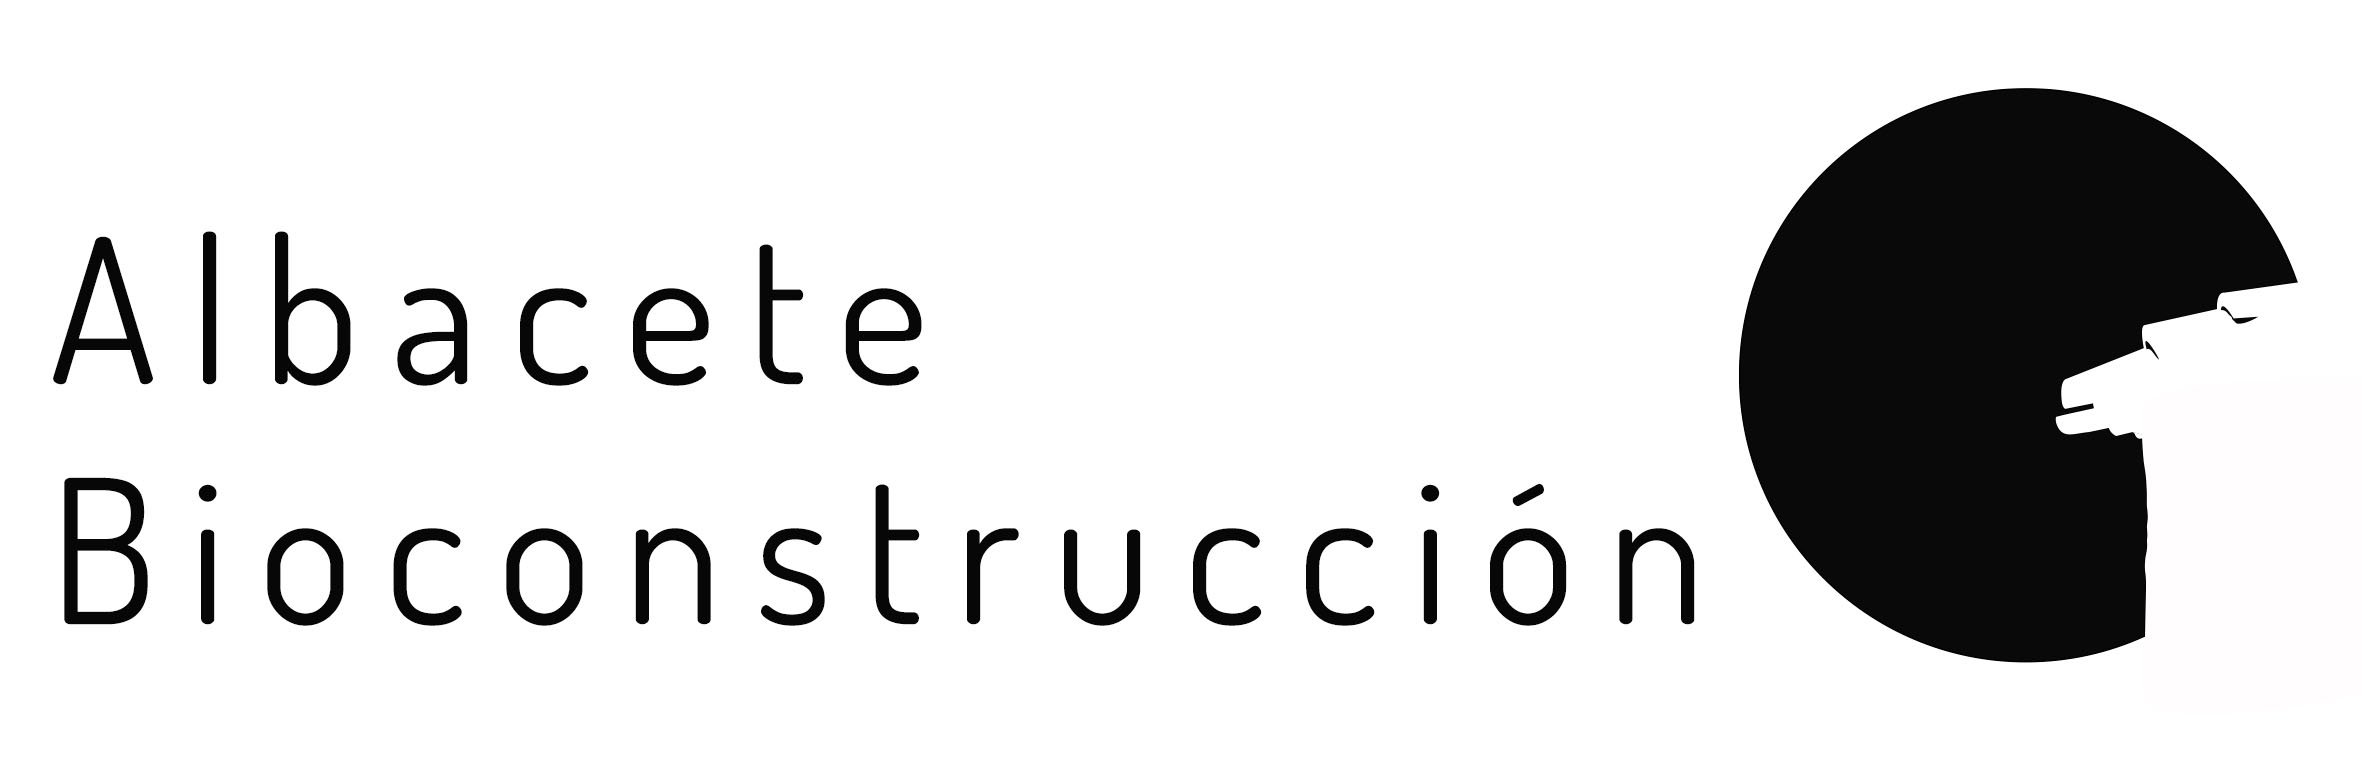 Bioconstrucción. Arquitectura Técnica Albacete